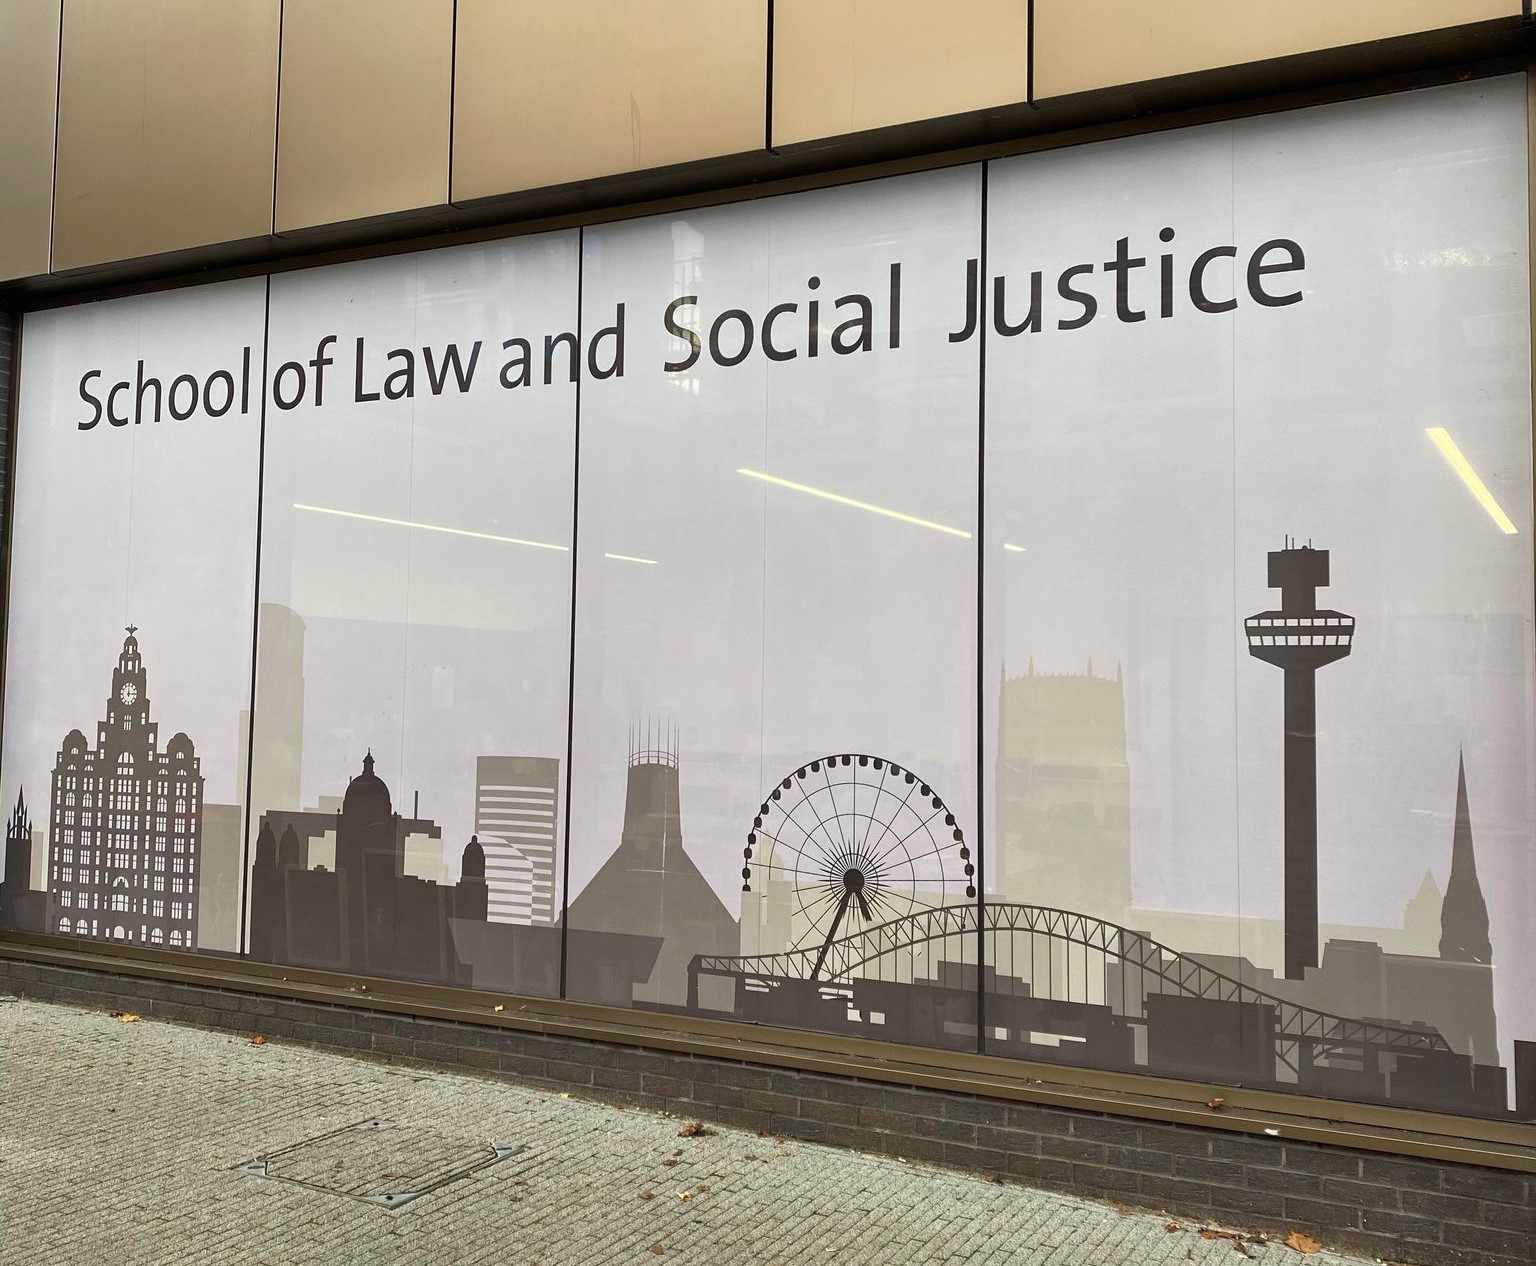 Bilde av en vegg med en plakat for Lawschoolen og School of Social Justice.